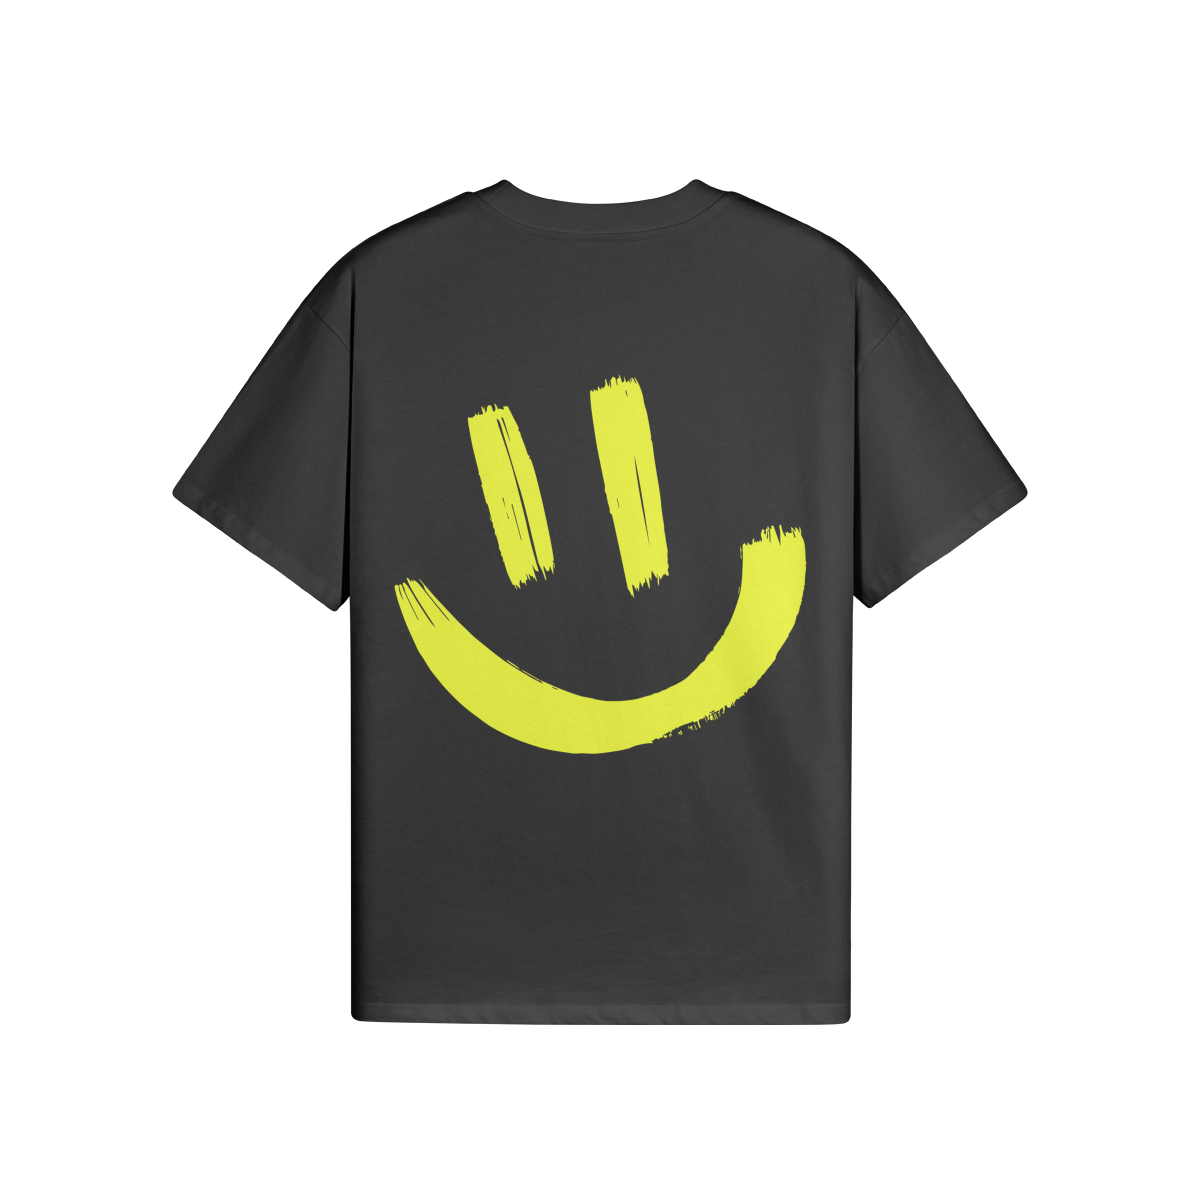 $MILE Yellow (BACK PRINT) - Unisex Oversized T-shirt (BLACK)